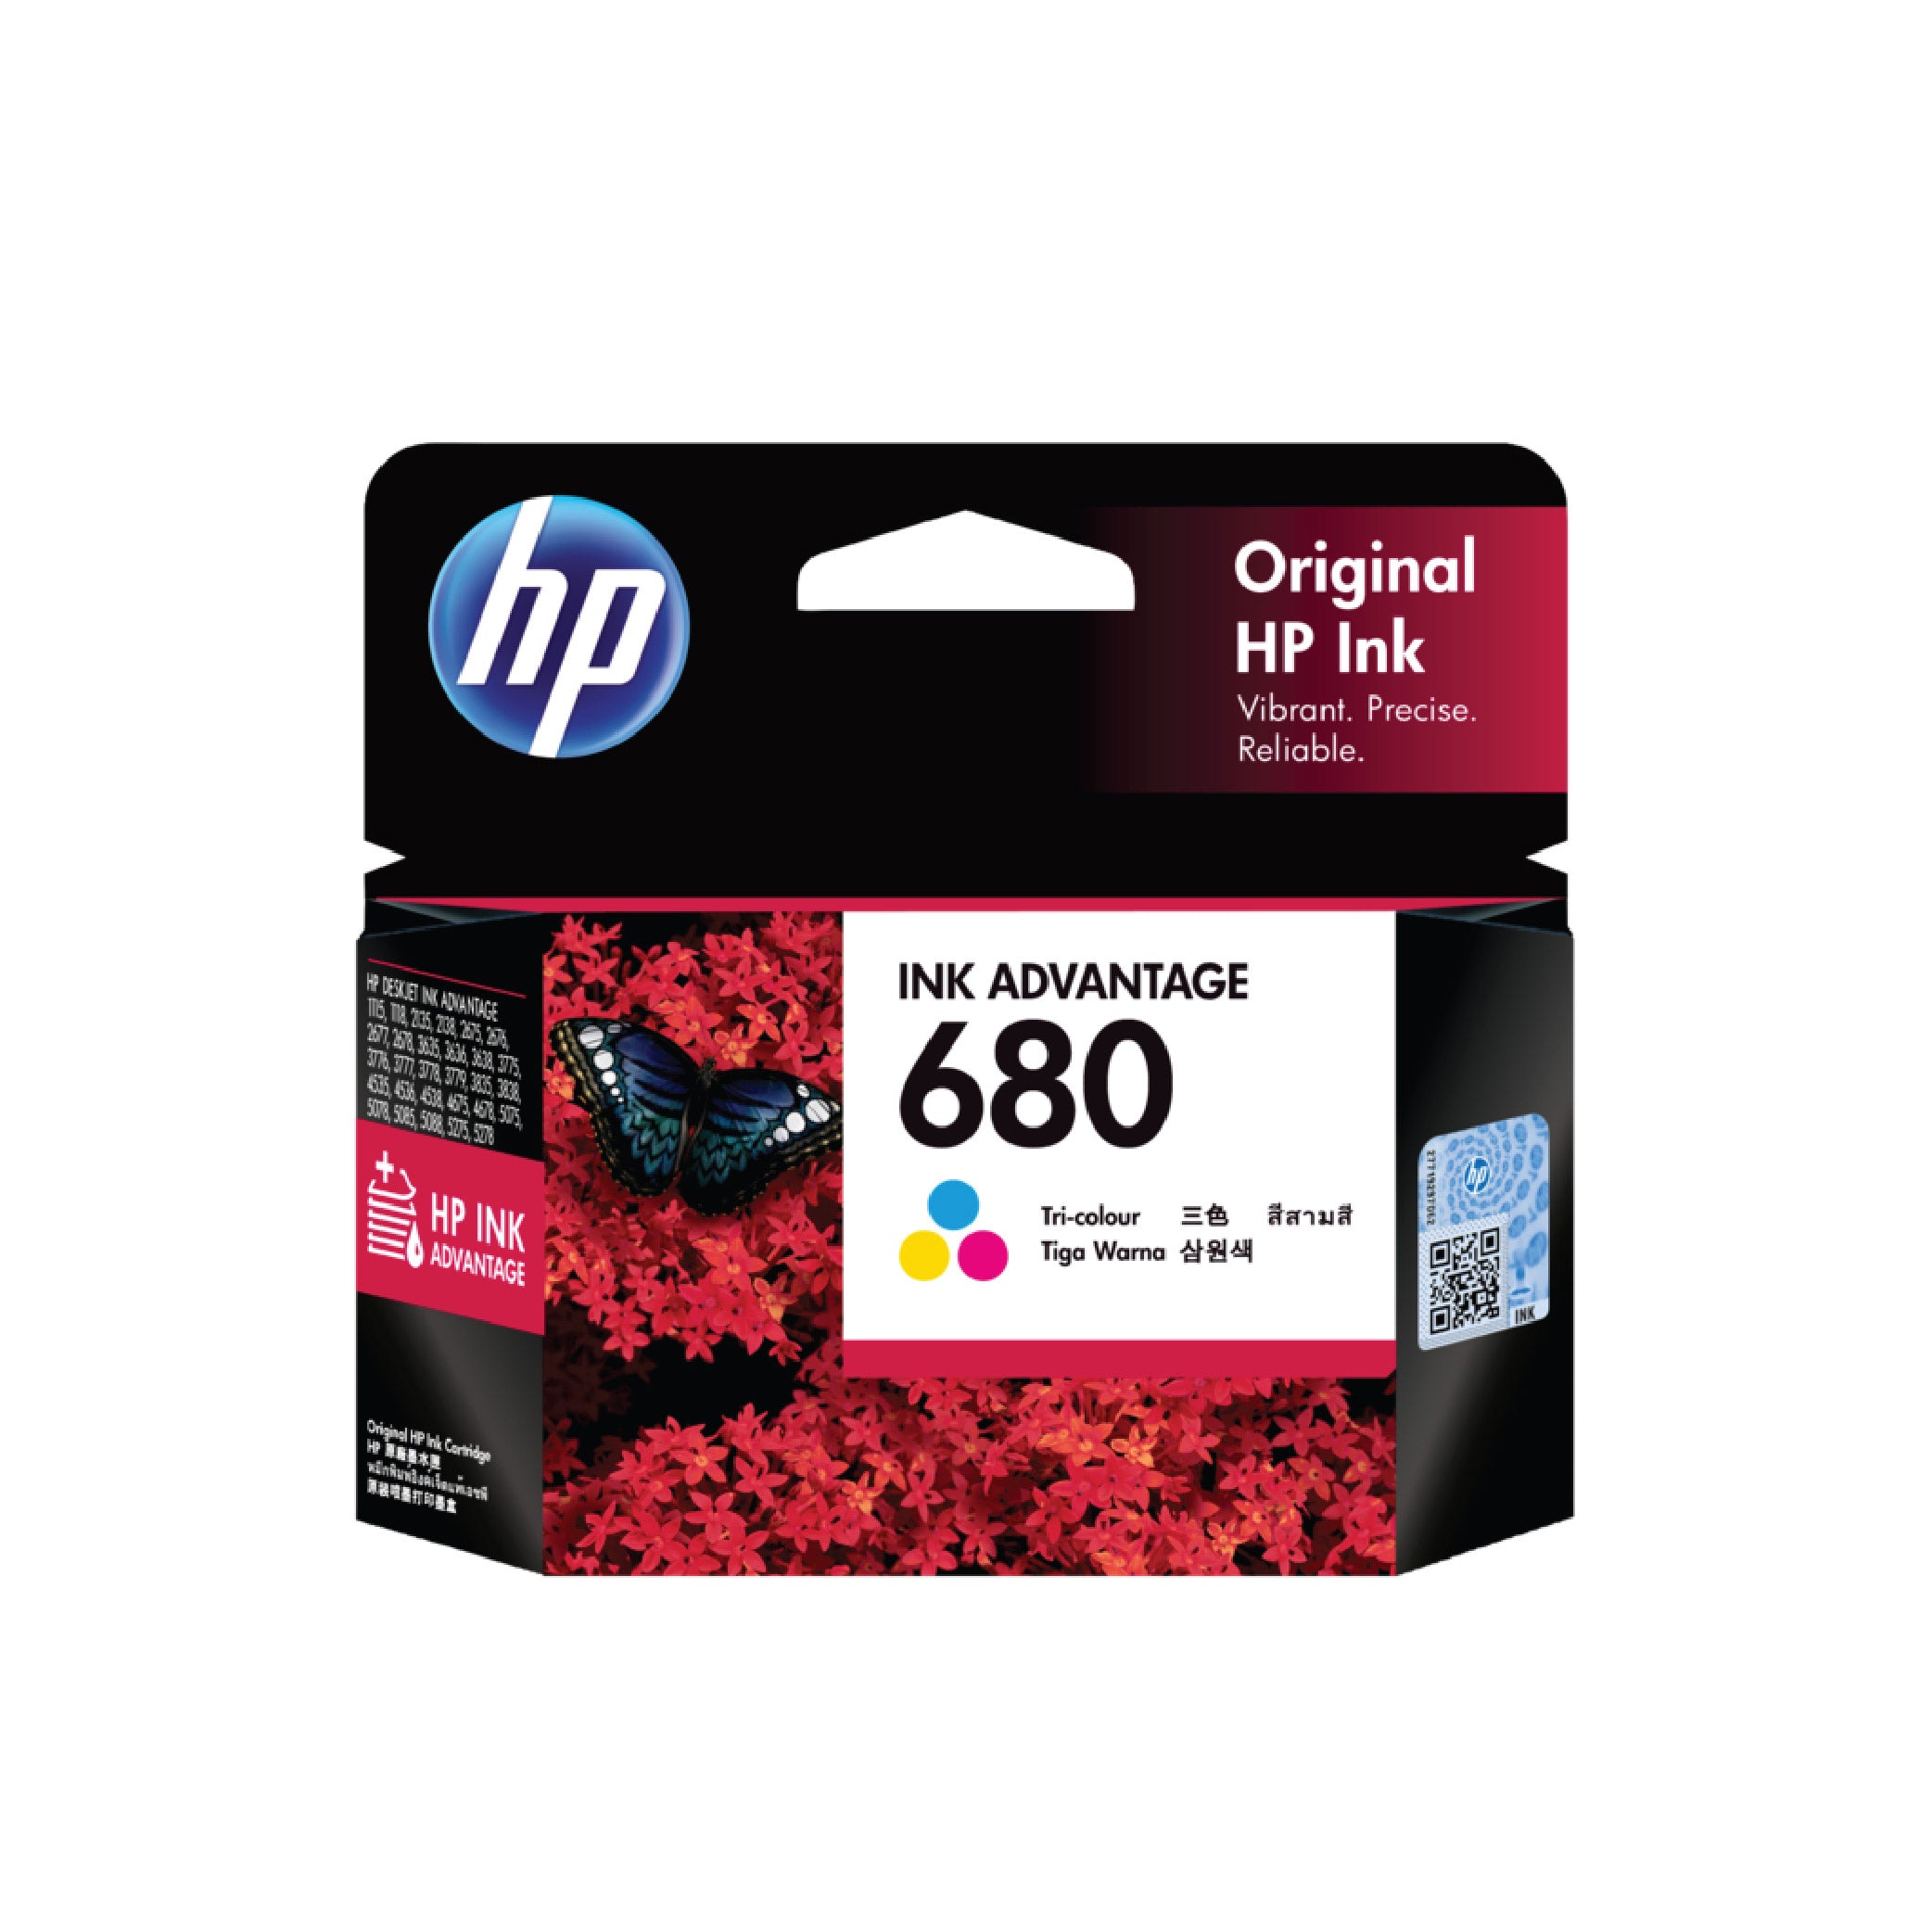 HP 680 Original Ink Advantage Cartridge - Tri-color (F6V26AA) (4625293181013)